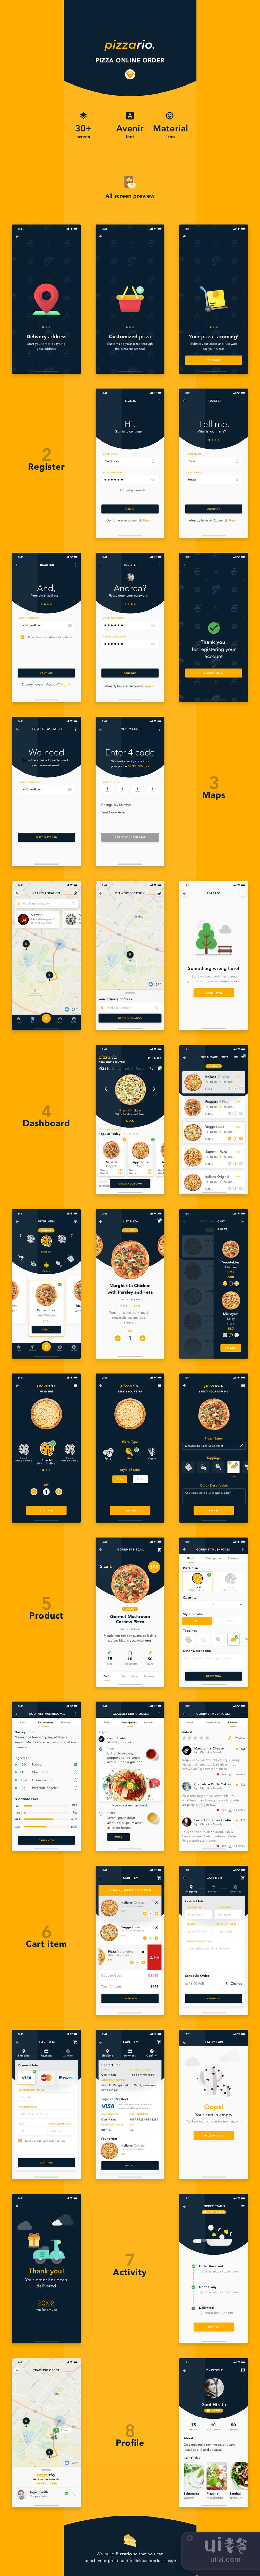 餐馆UI套件 (Pizzario UI Kit)插图1